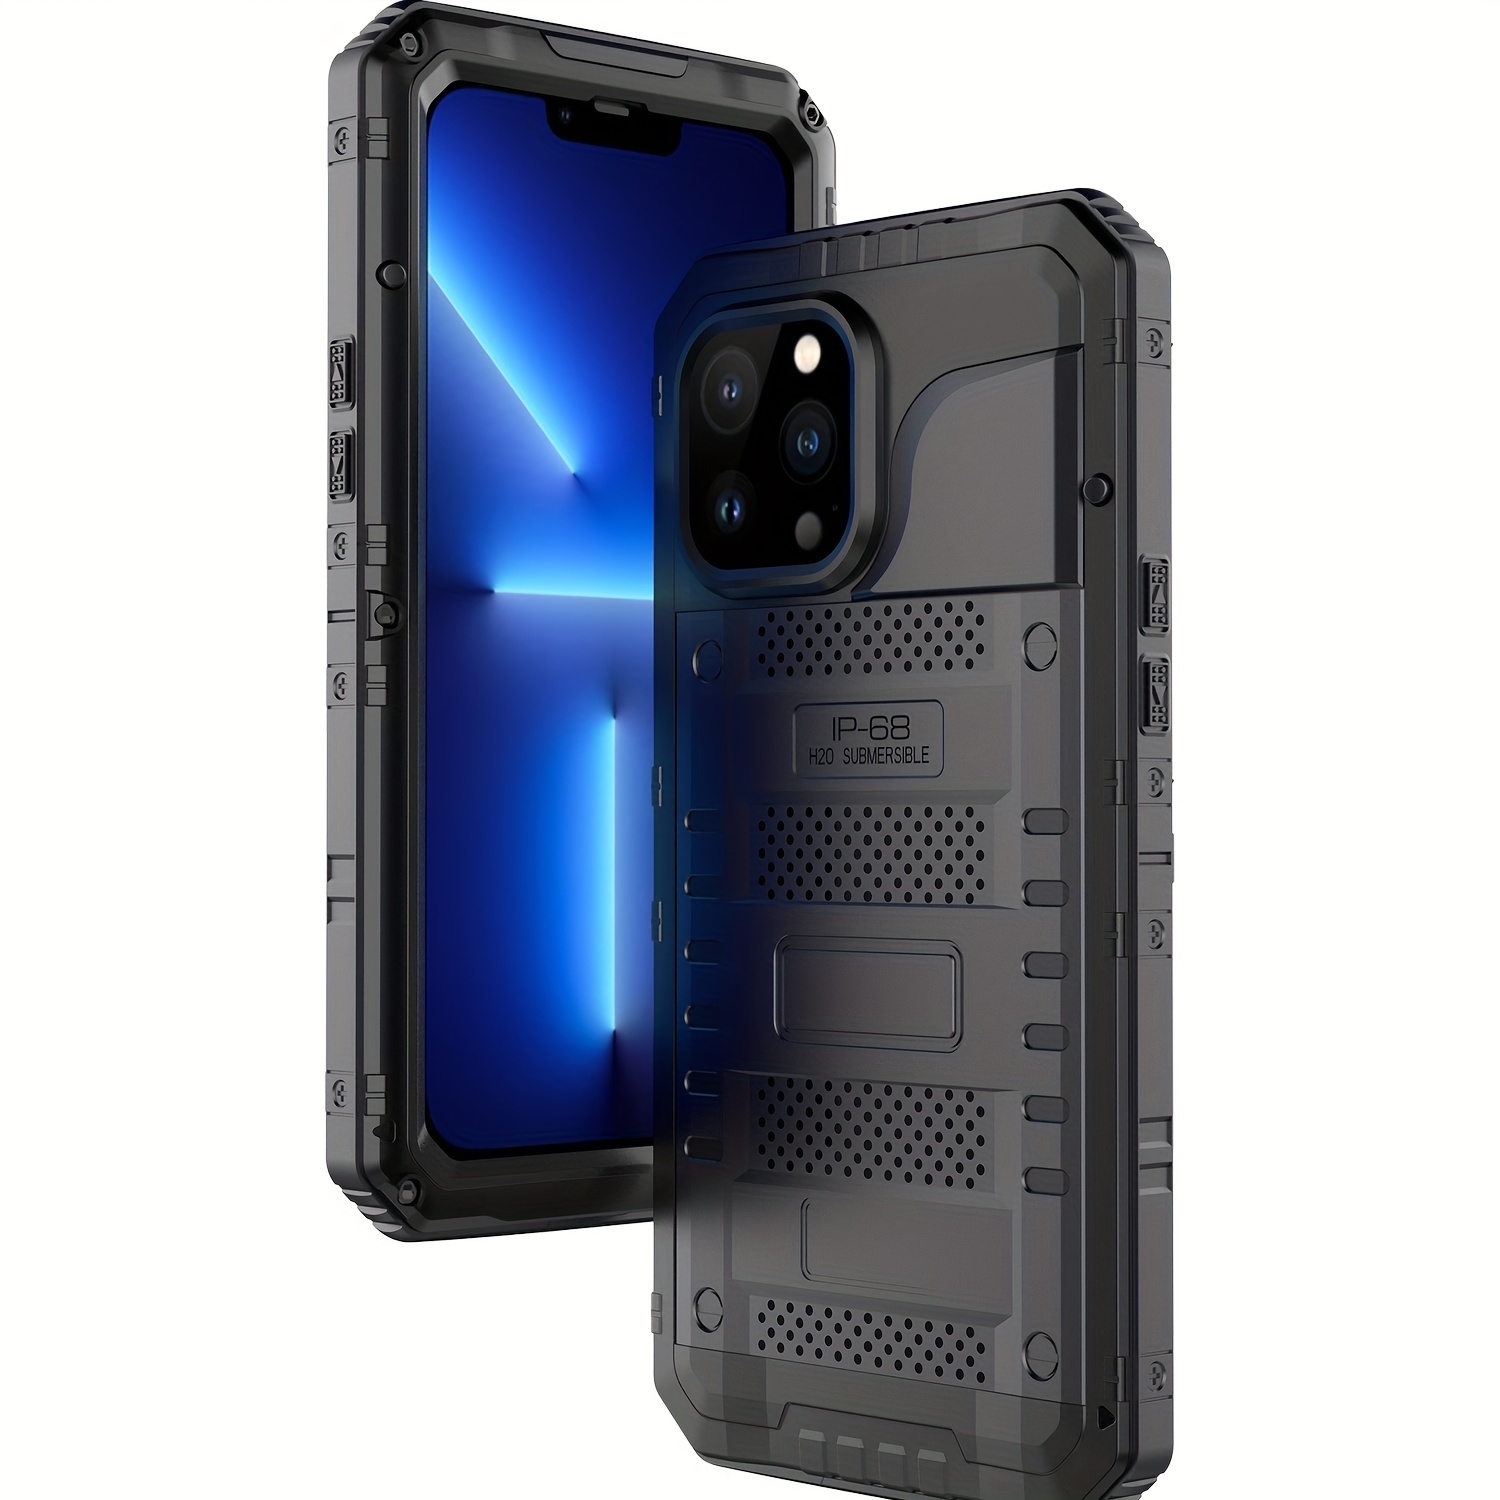 Case iPhone 14 Pro Max Verde Metalico Logo Silicon y Microfibra Funda  Protector